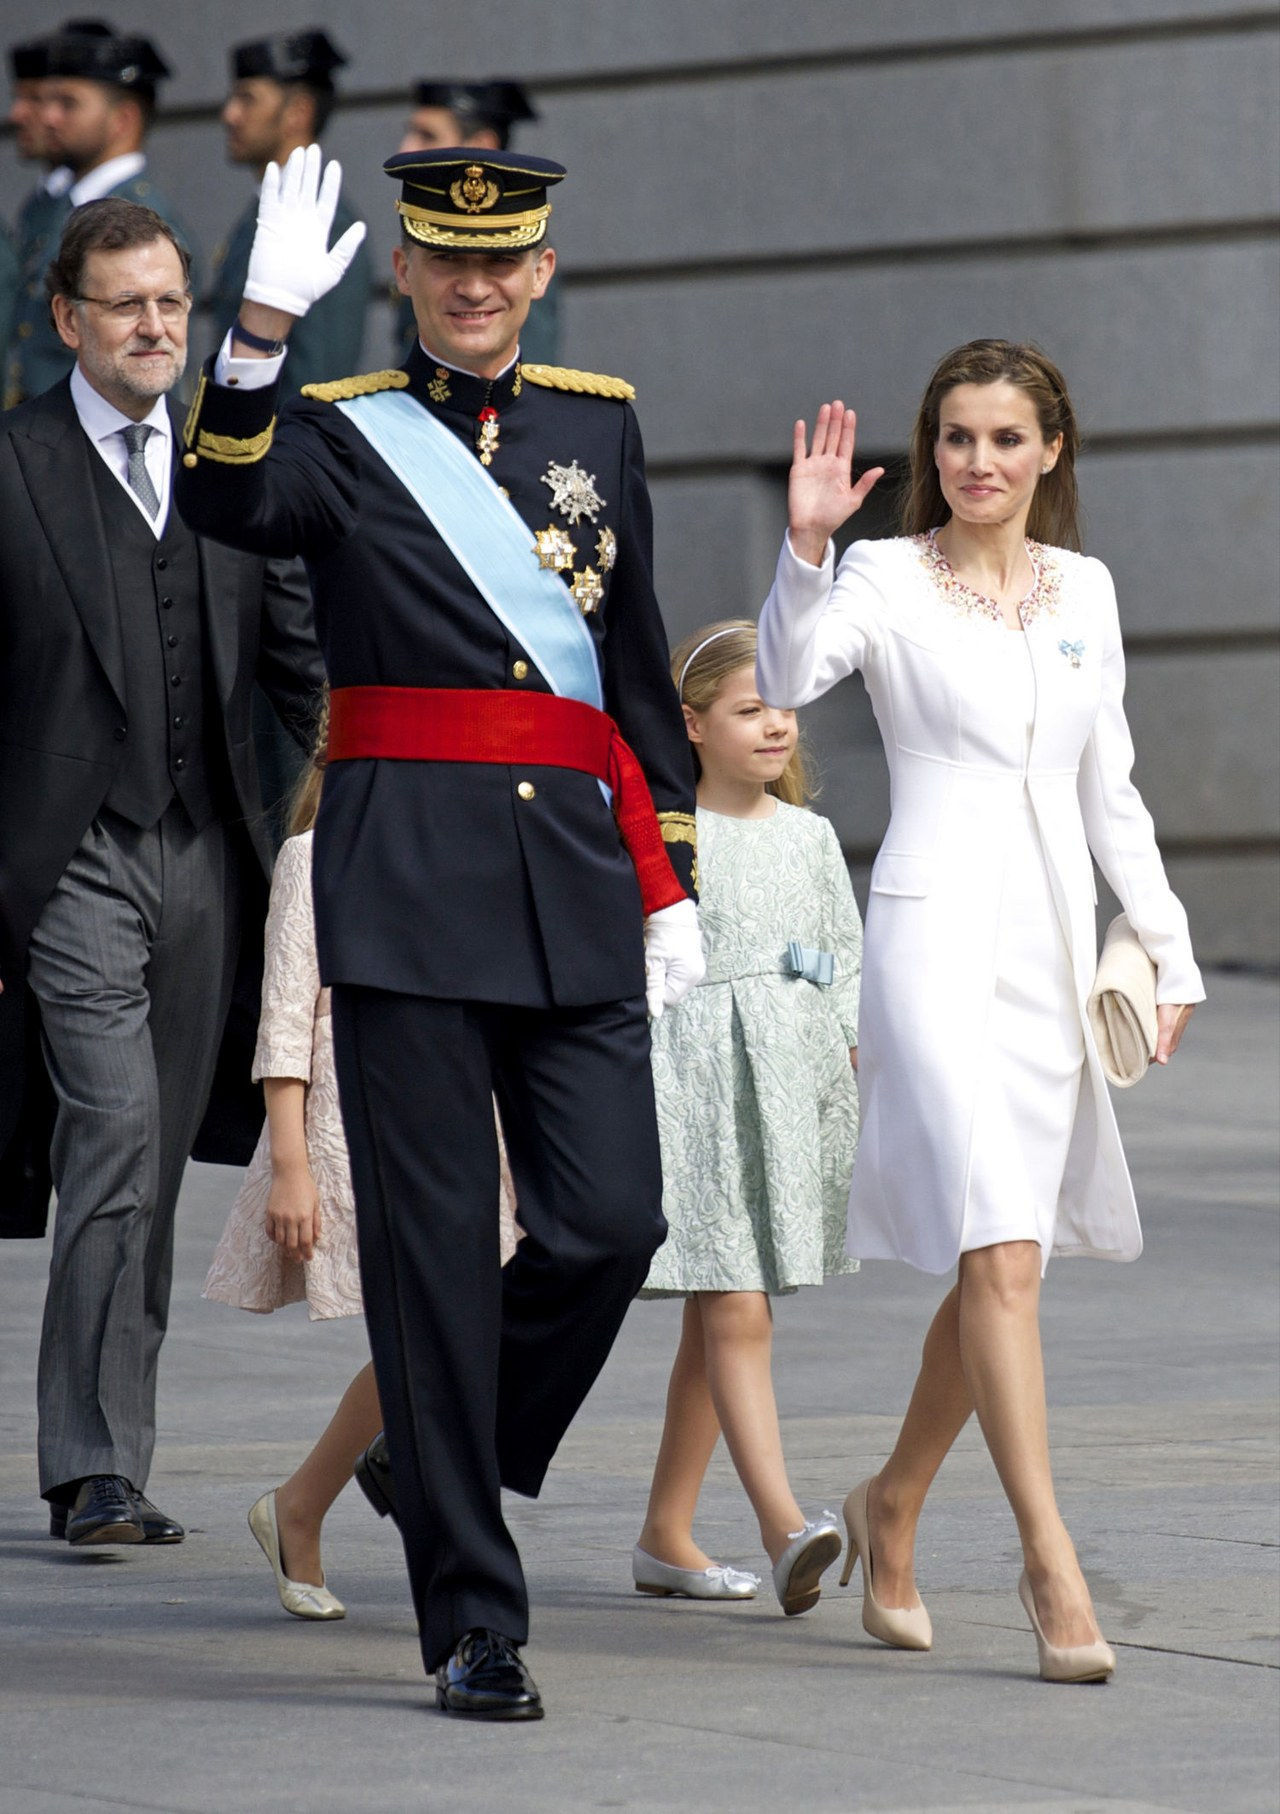 女王 letizia felipe varela white suit june 2014